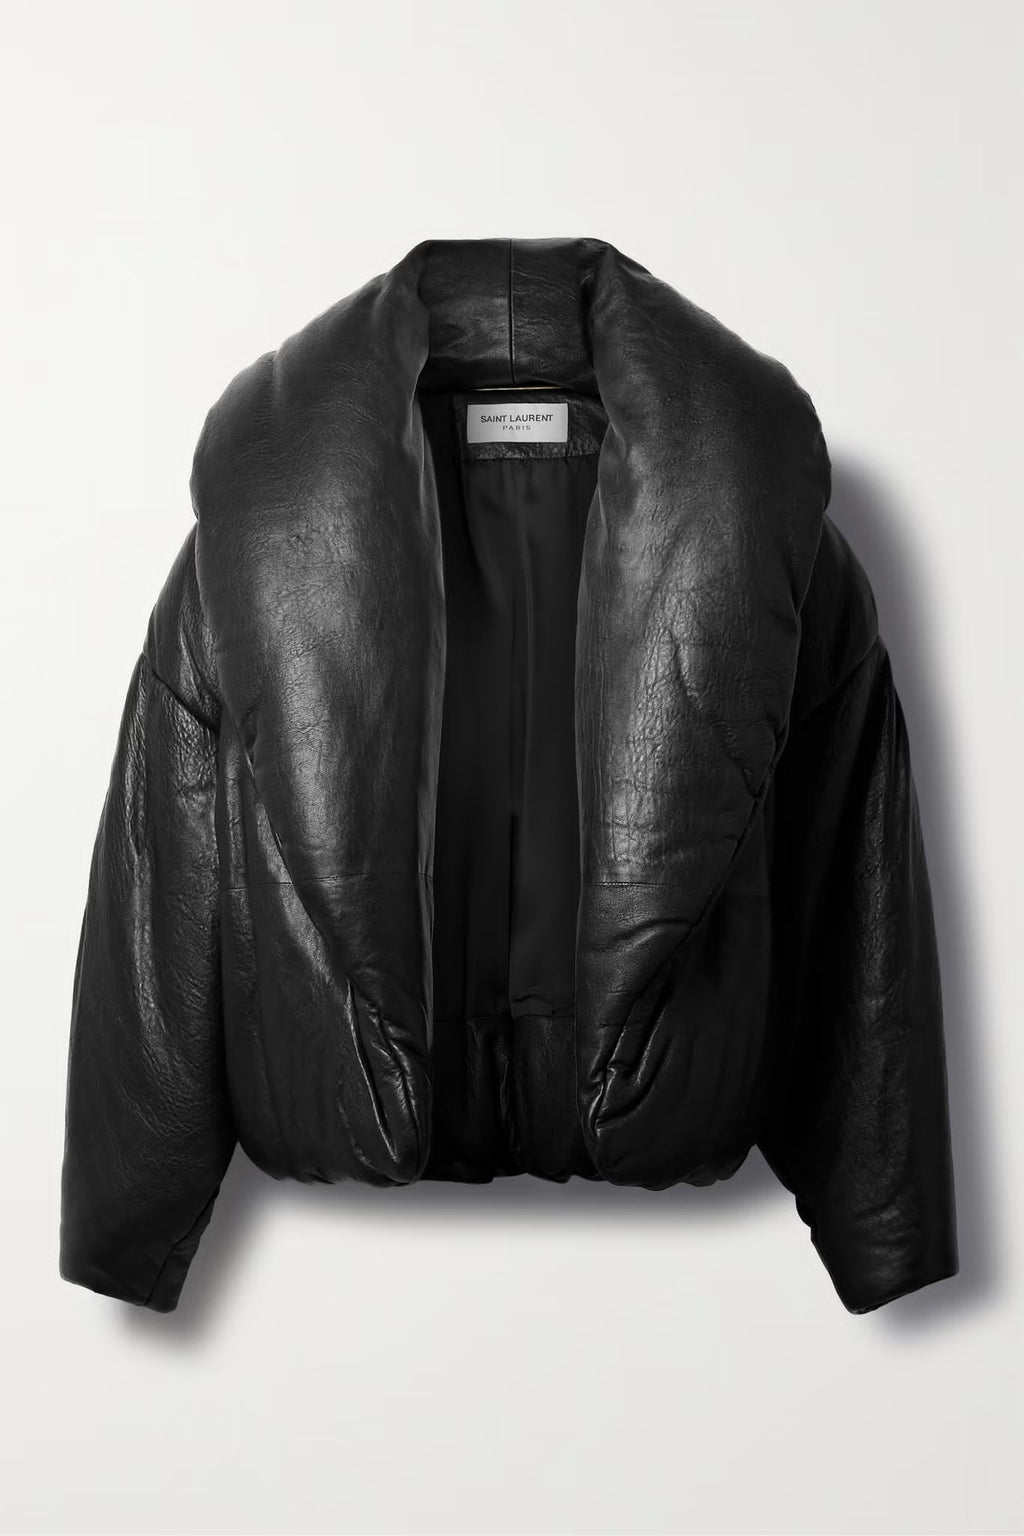 Ysl black leather bomber jacket 2023 – LuxuryPromise